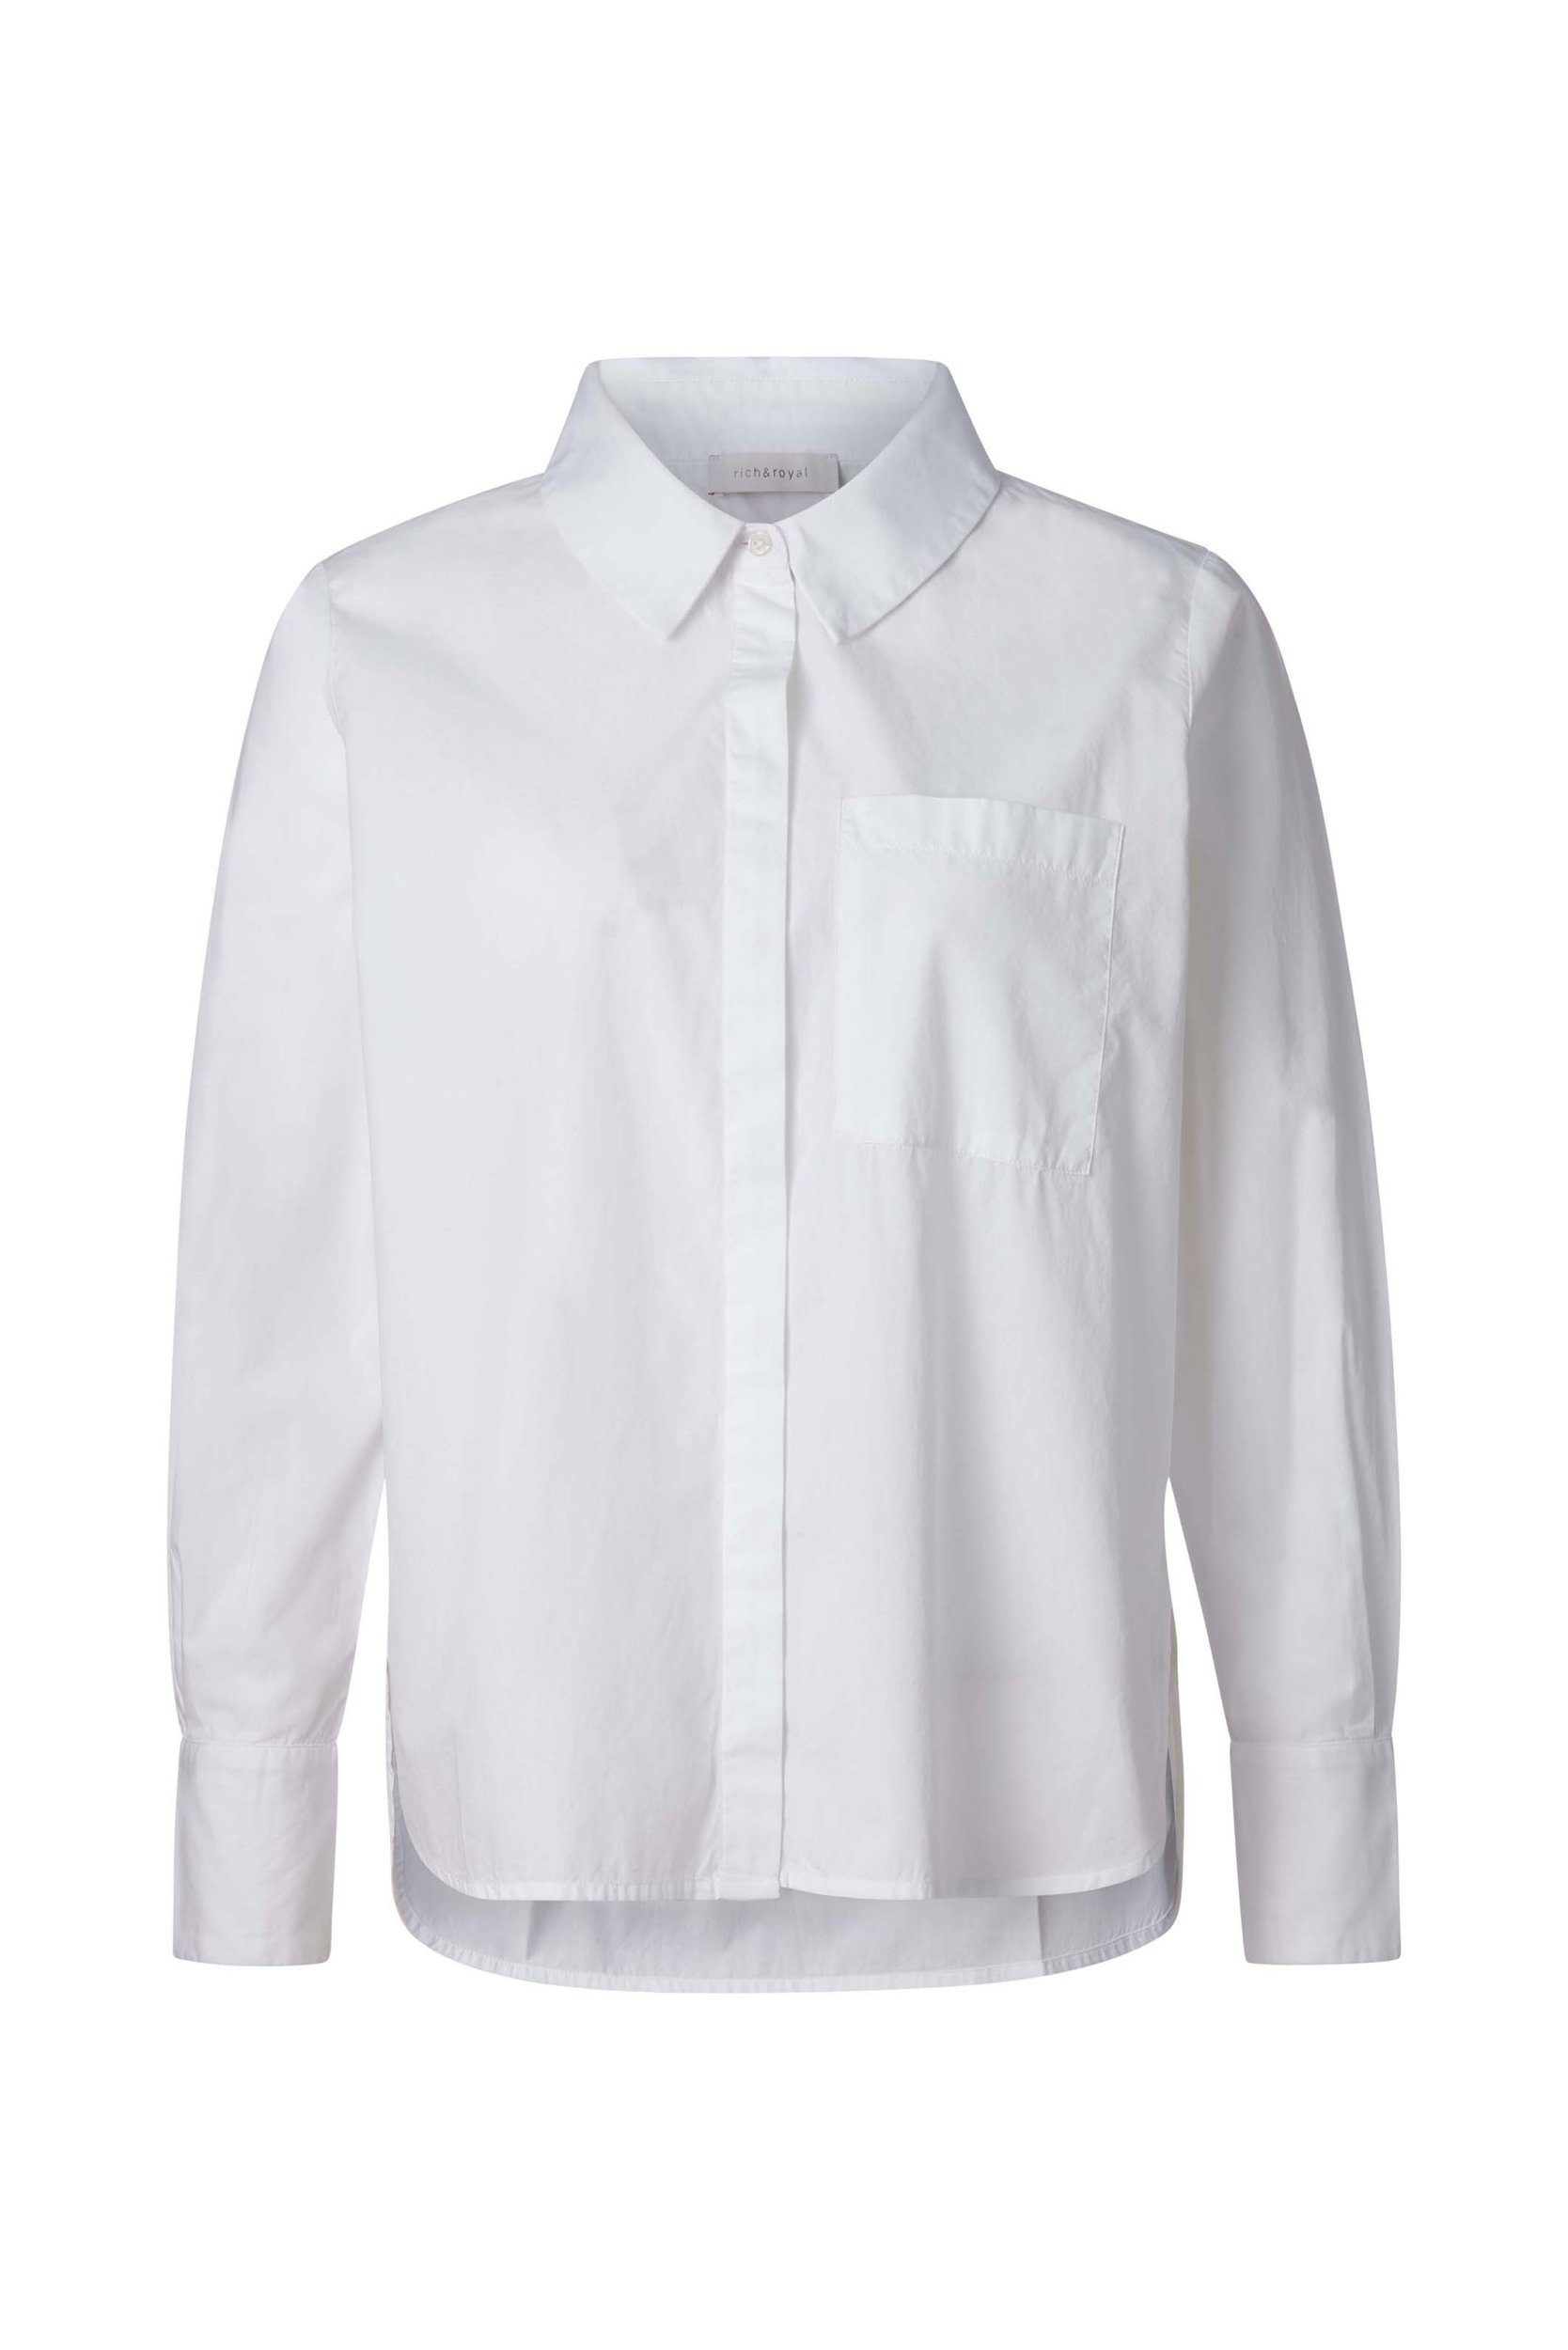 Basic Rich & Royal Blusentop blouse cotton